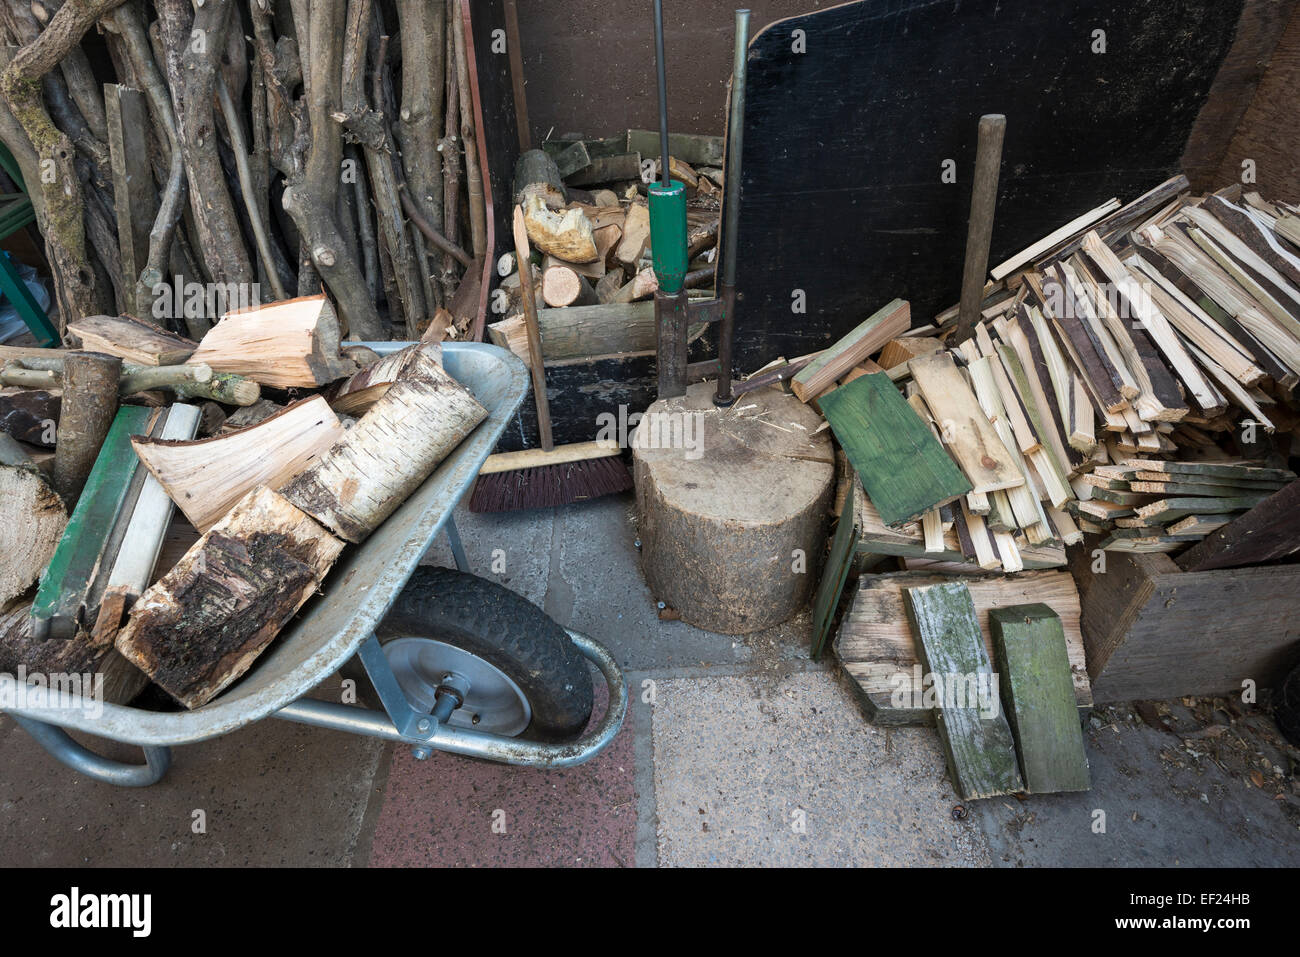 Carretilla de mano llena de troncos al lado de un montón de leña y un registro divisor. Foto de stock